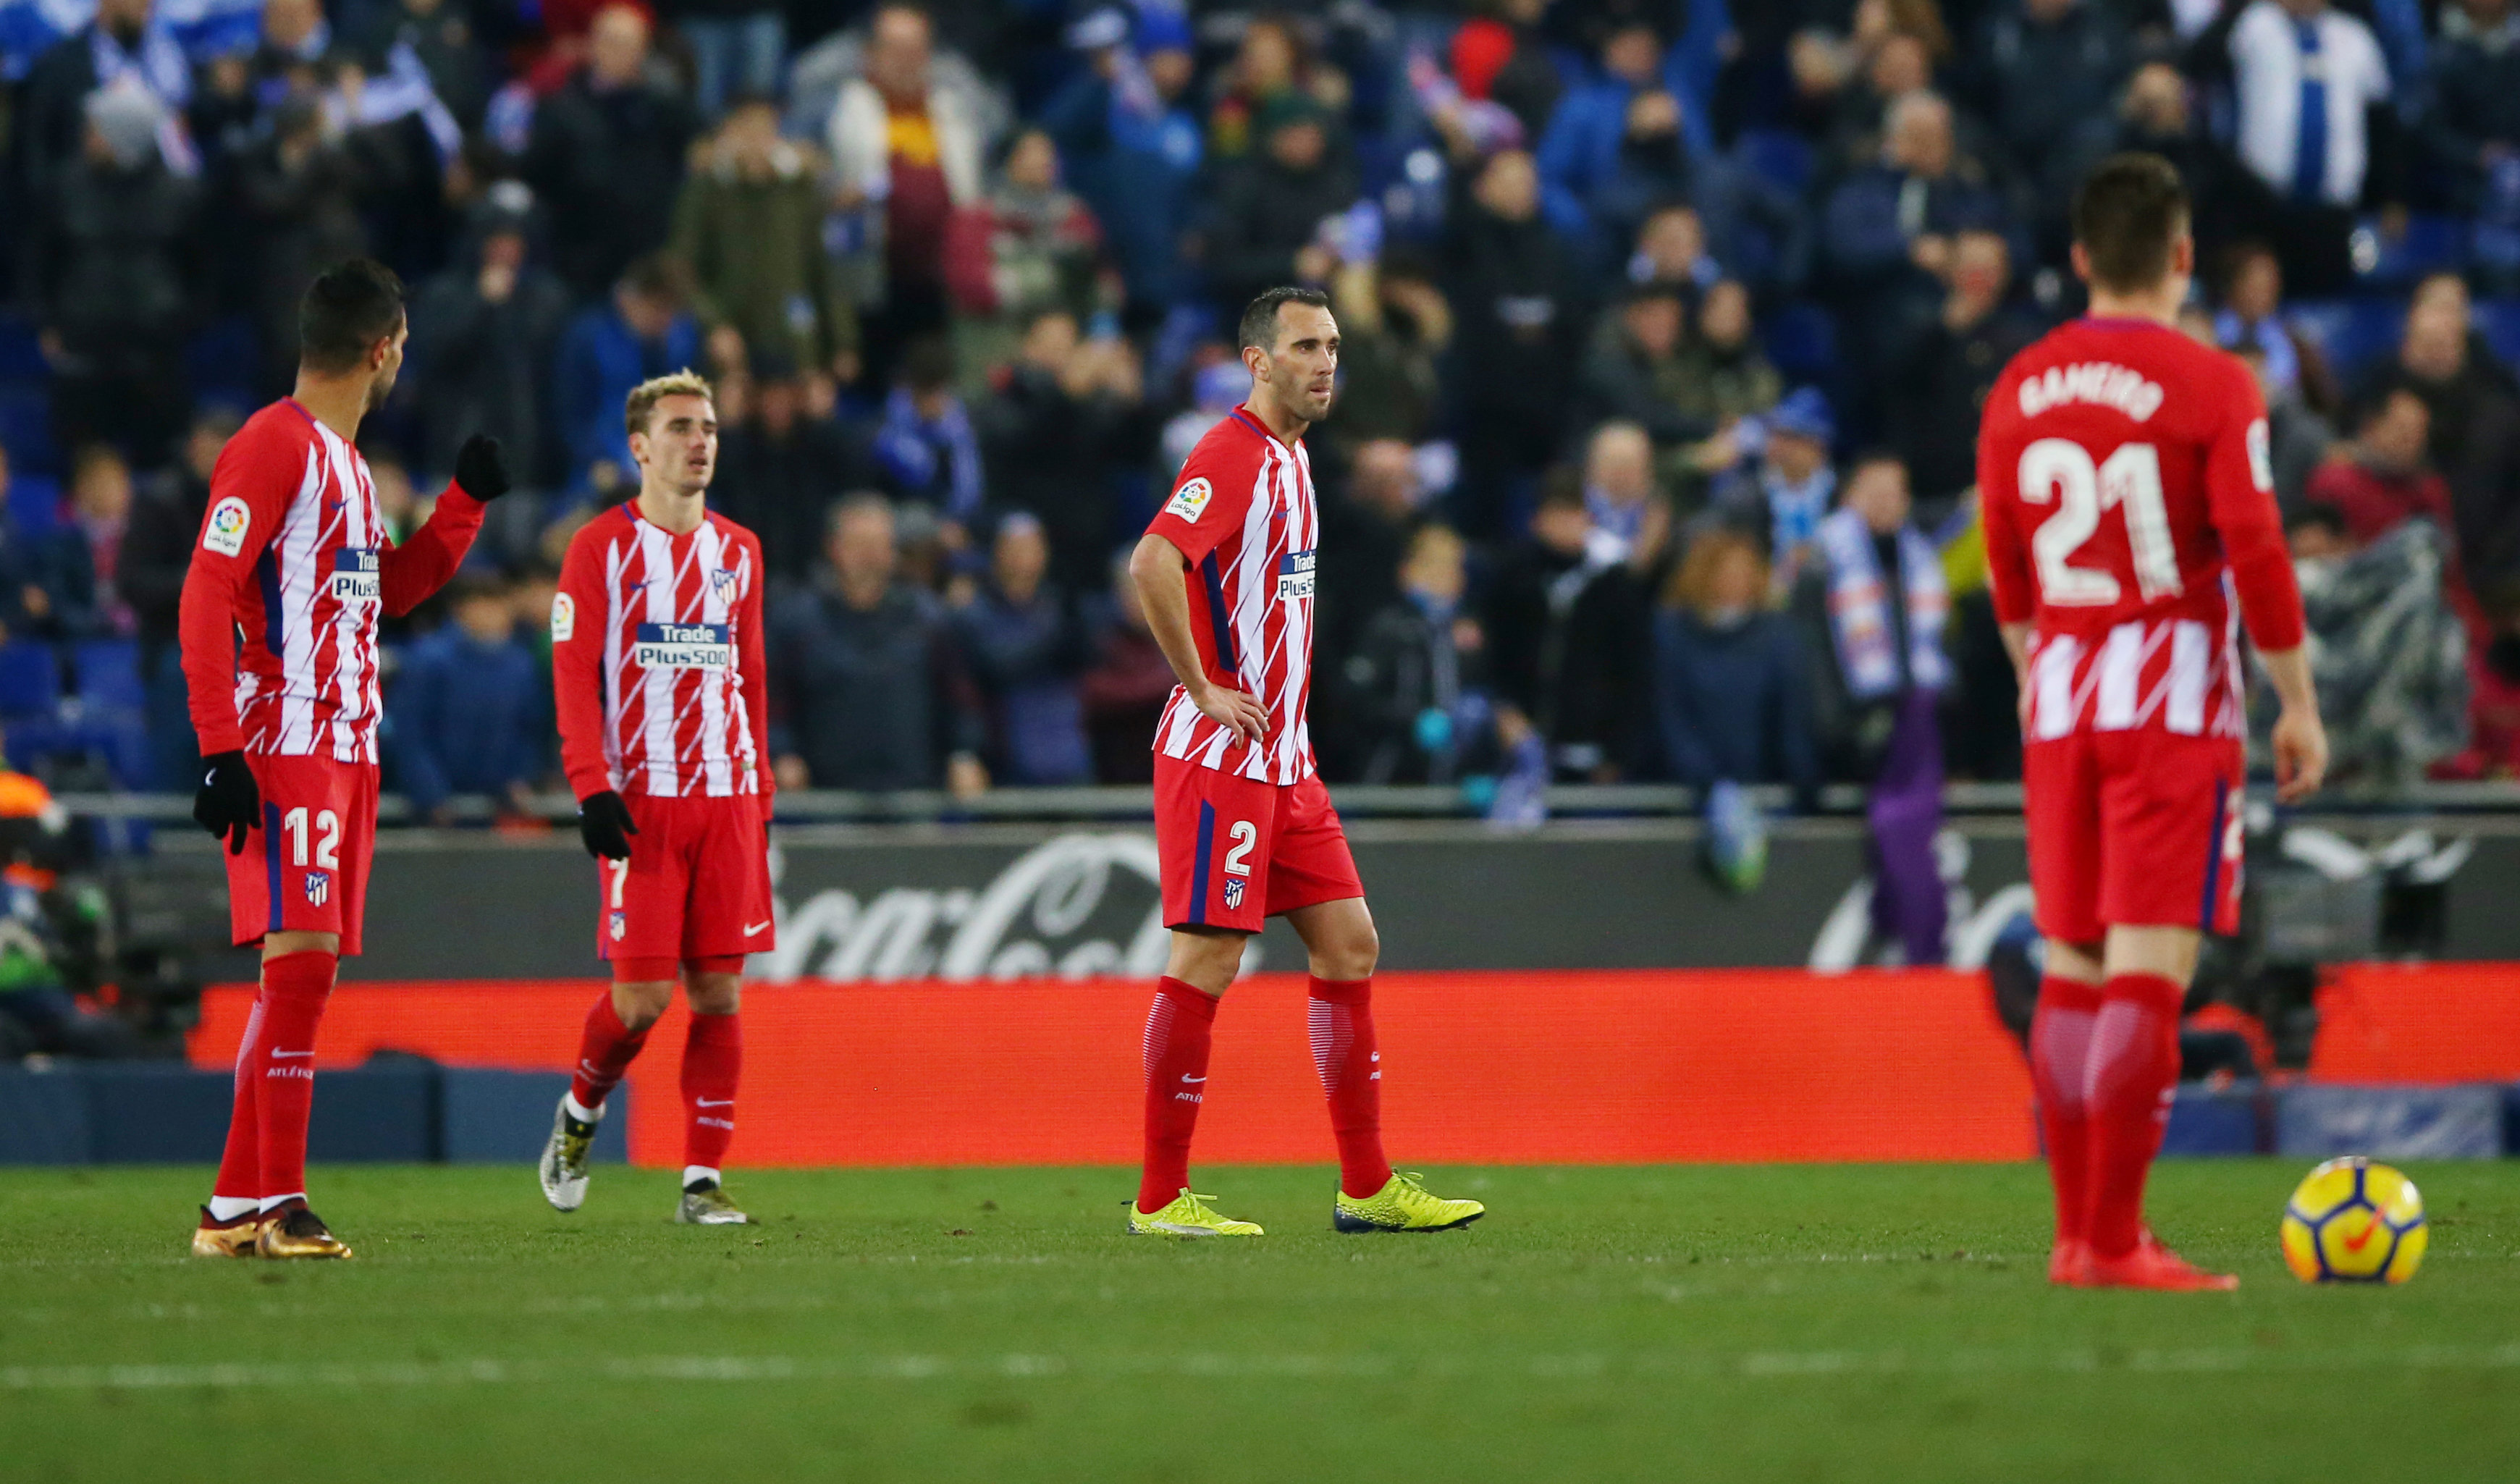 Nỗi thất vọng của các cầu thủ Atletico Madrid sau trận thua Espanyol. Ảnh: REUTERS